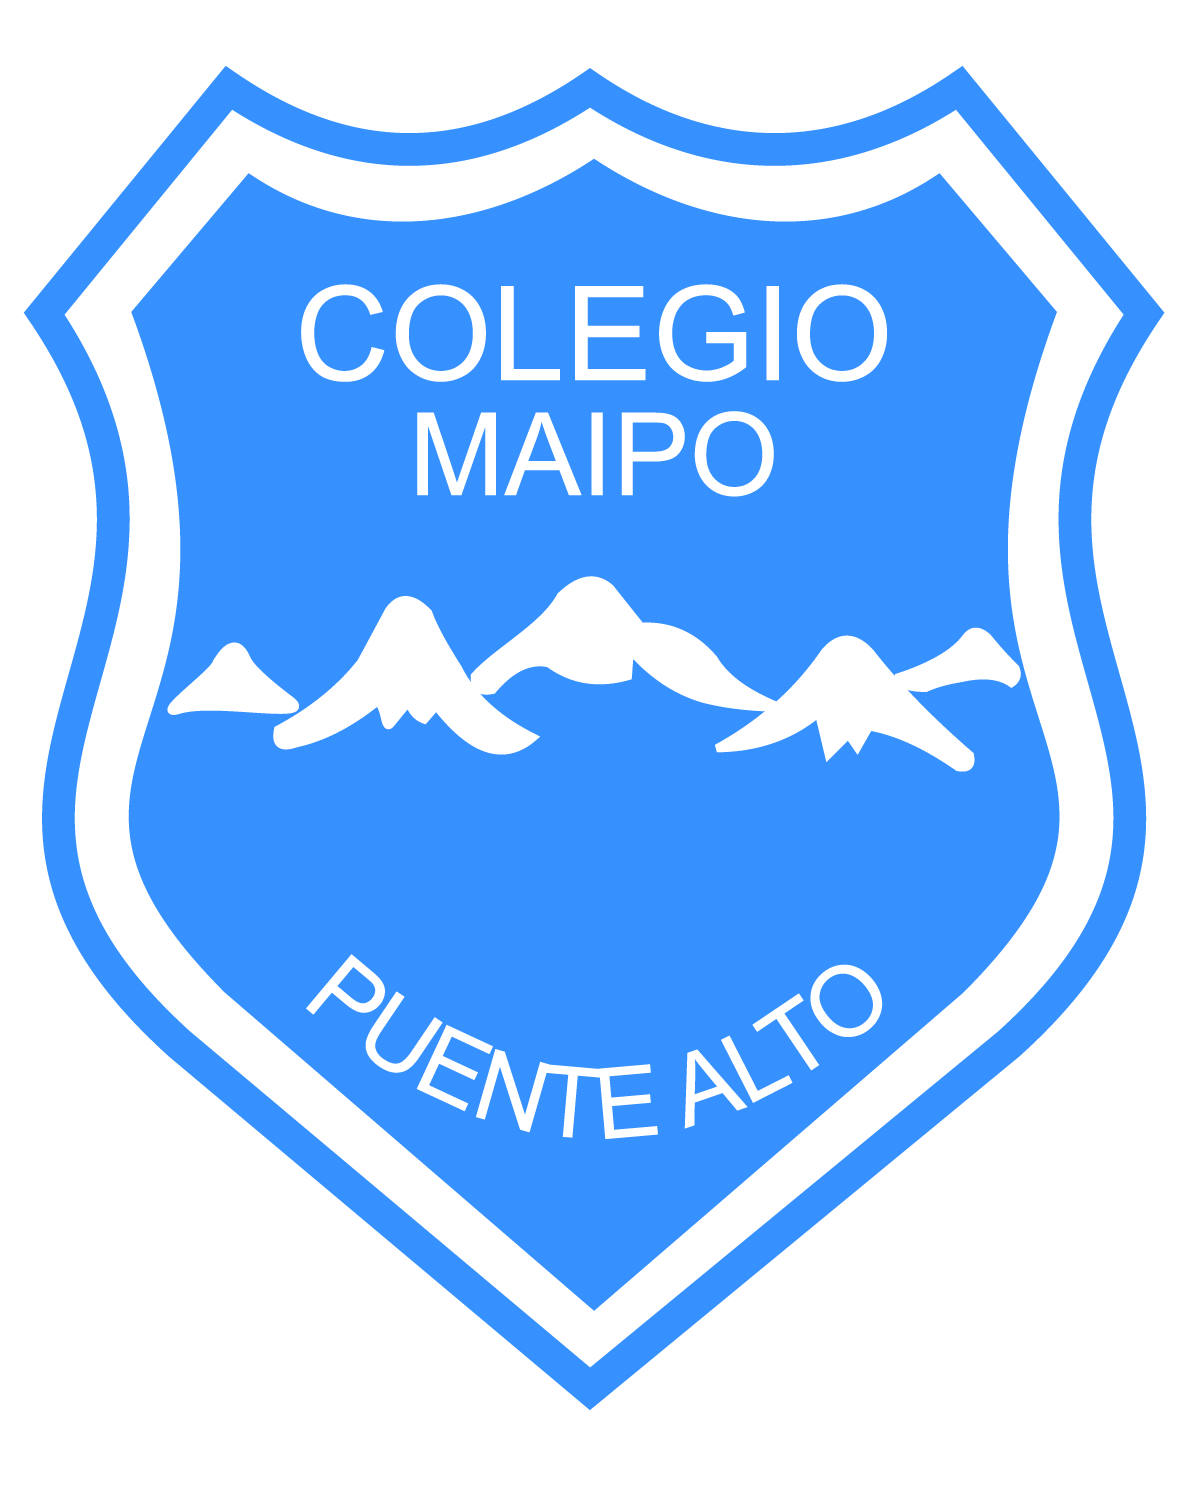 COLEGIO MAIPO